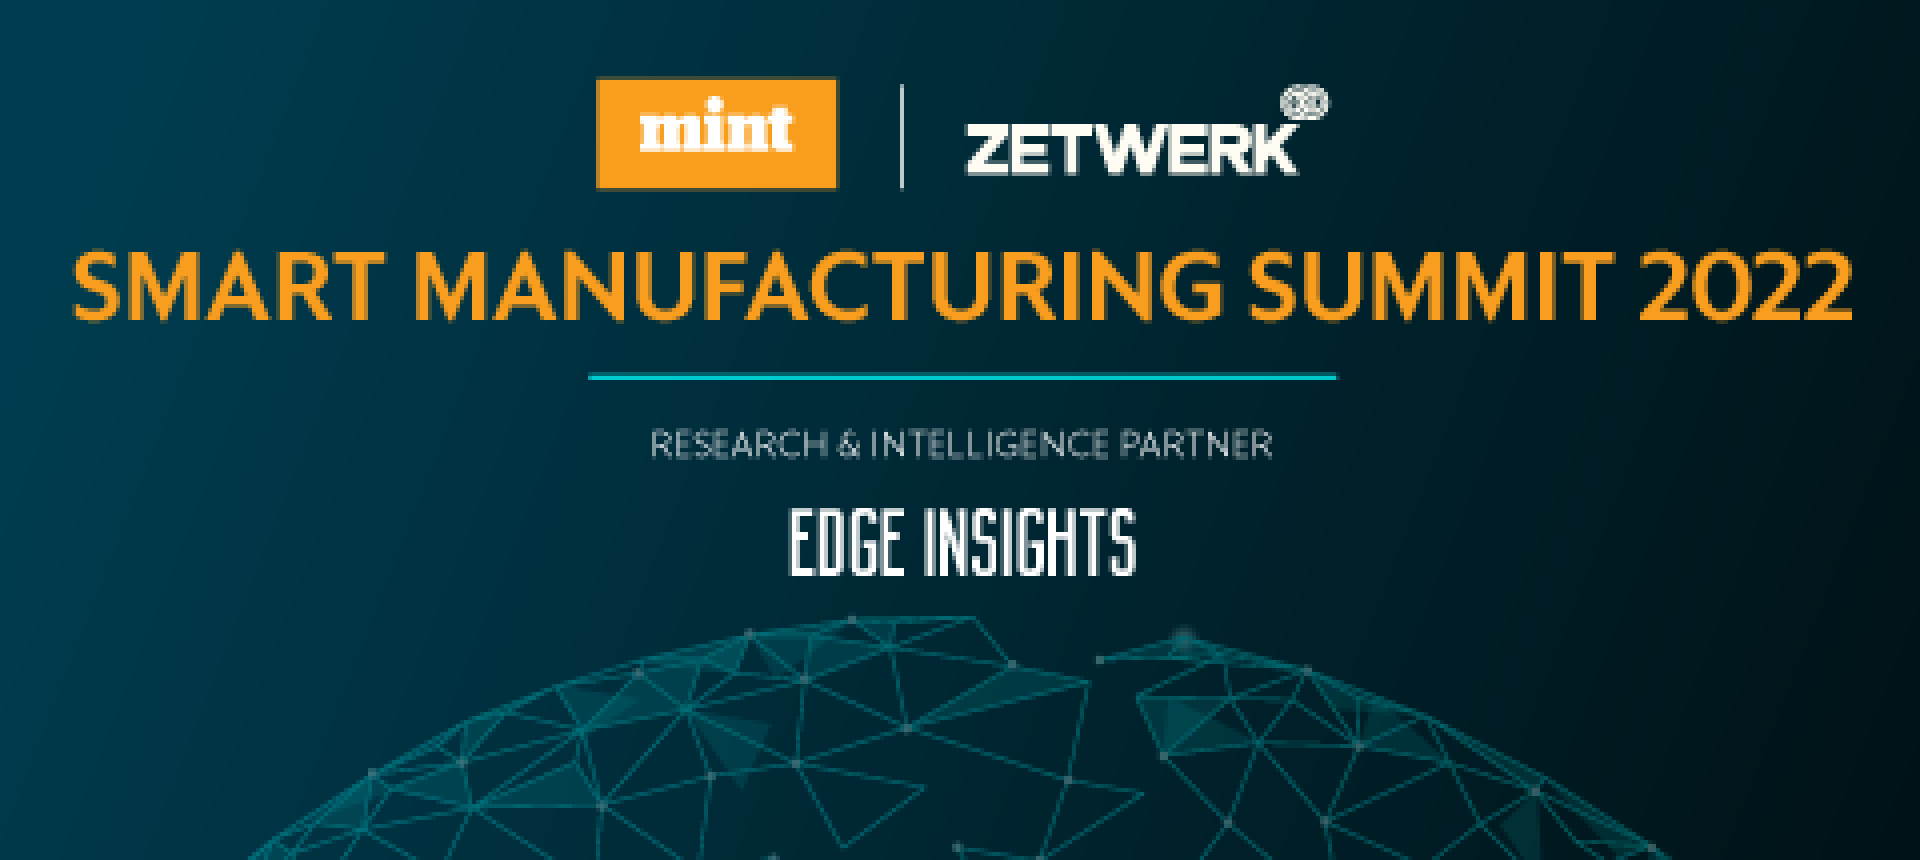 Zetwerk Smart Manufacturing Summit